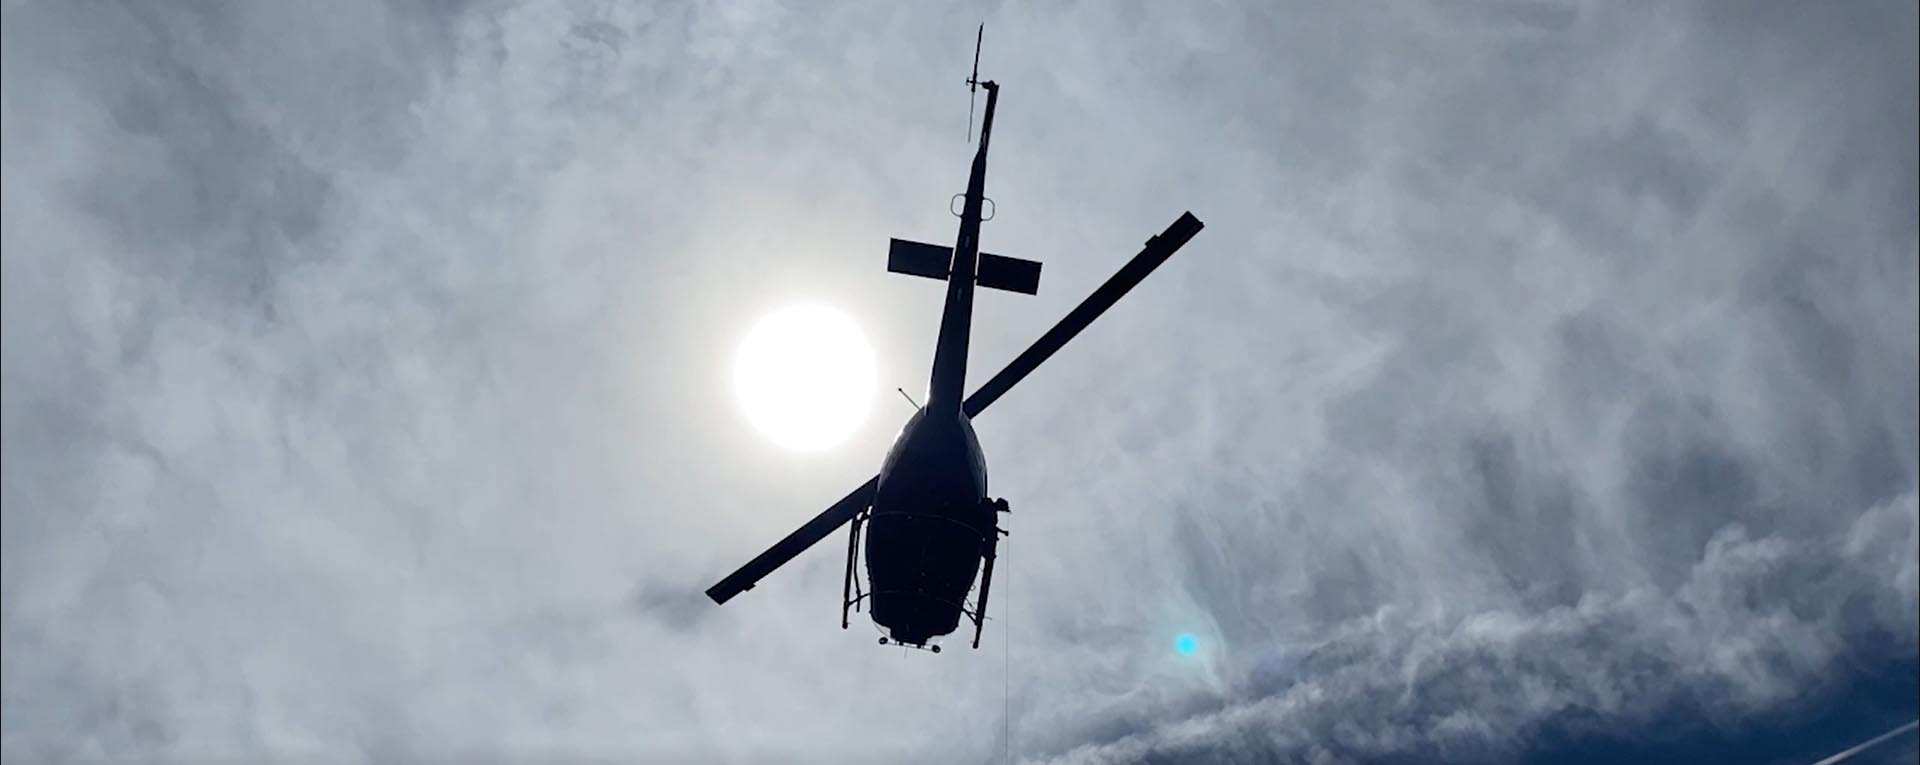 طائرة هليكوبتر تحلق في السماء